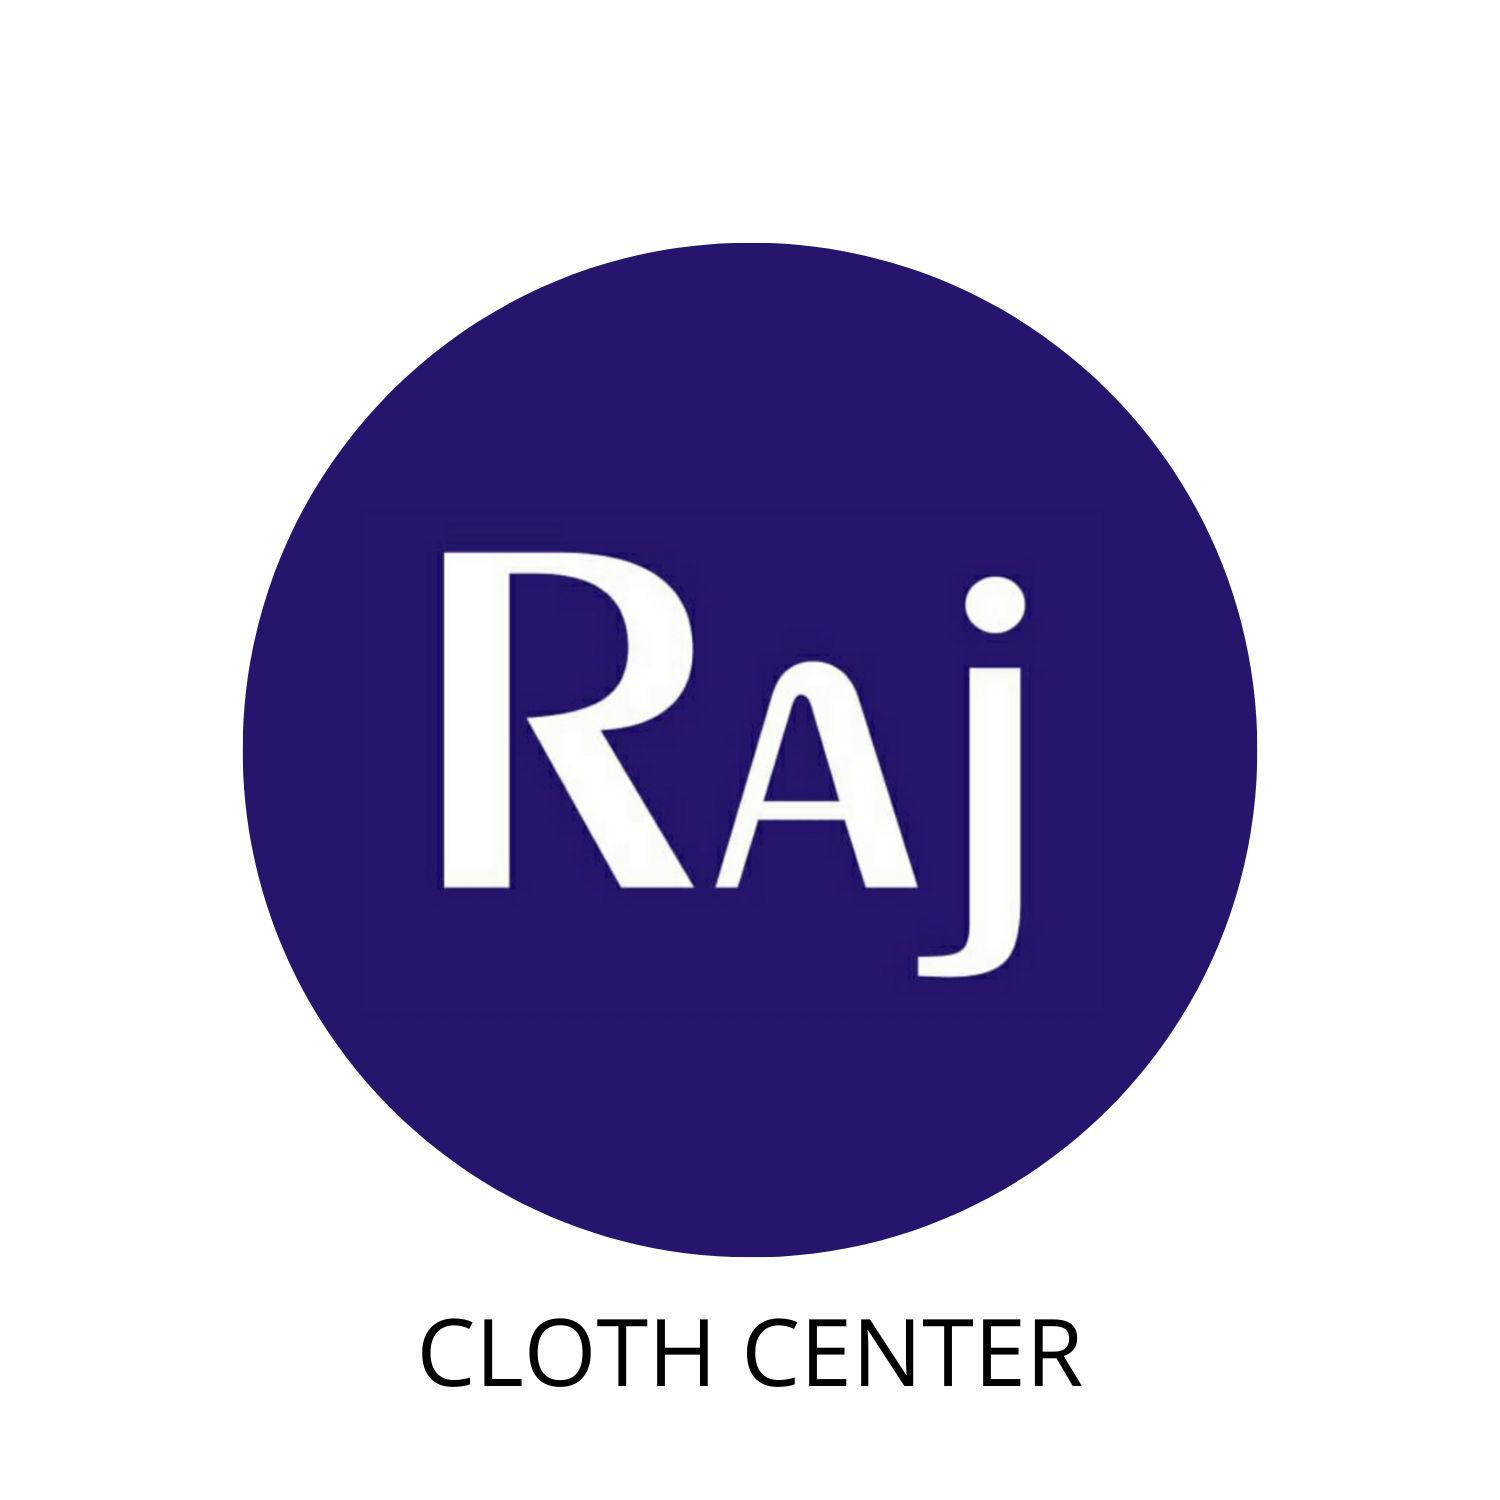 Raj Cloth Center